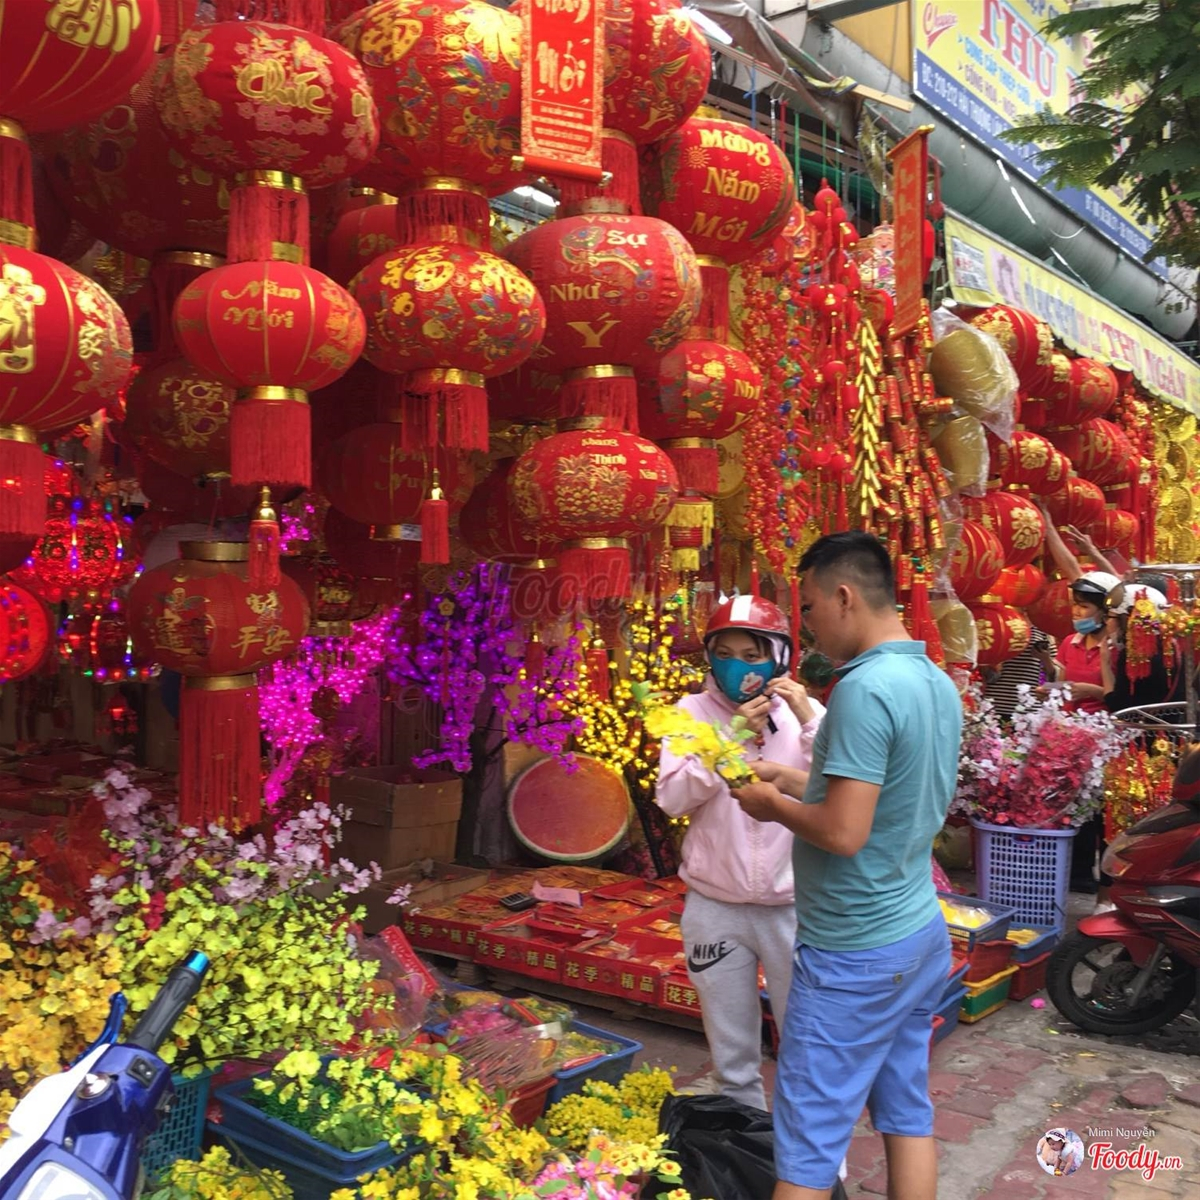 Cháy túi khi lạc đến khu chợ đồ trang trí Tết sầm uất nhất Sài Gòn ...